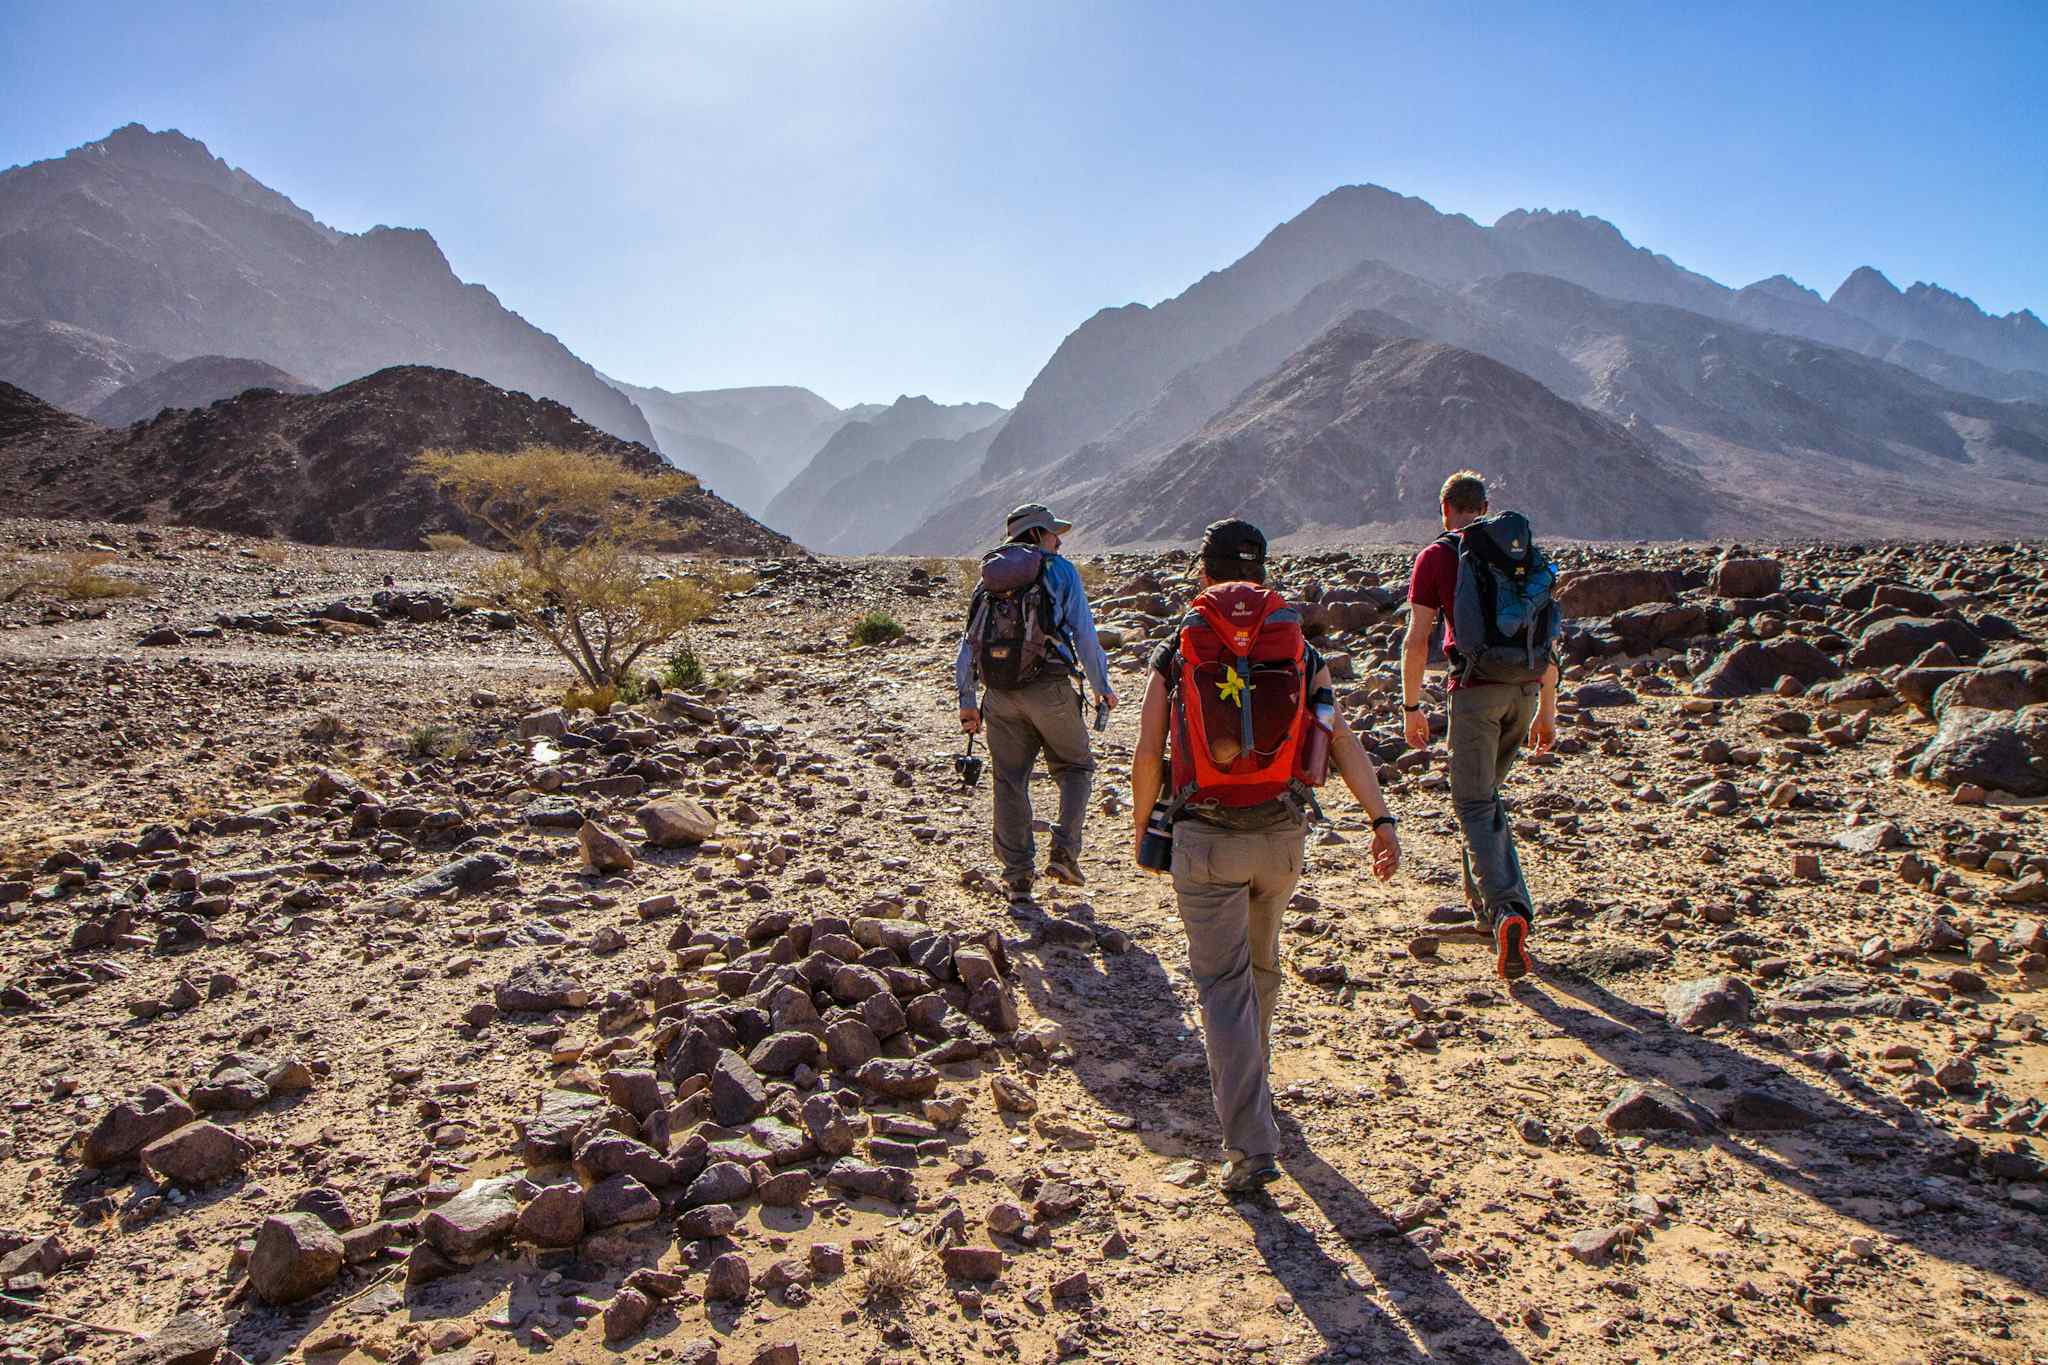 Desert Trek on the Jordan Trail
Host image - Experience Jordan / The Jordan Trail